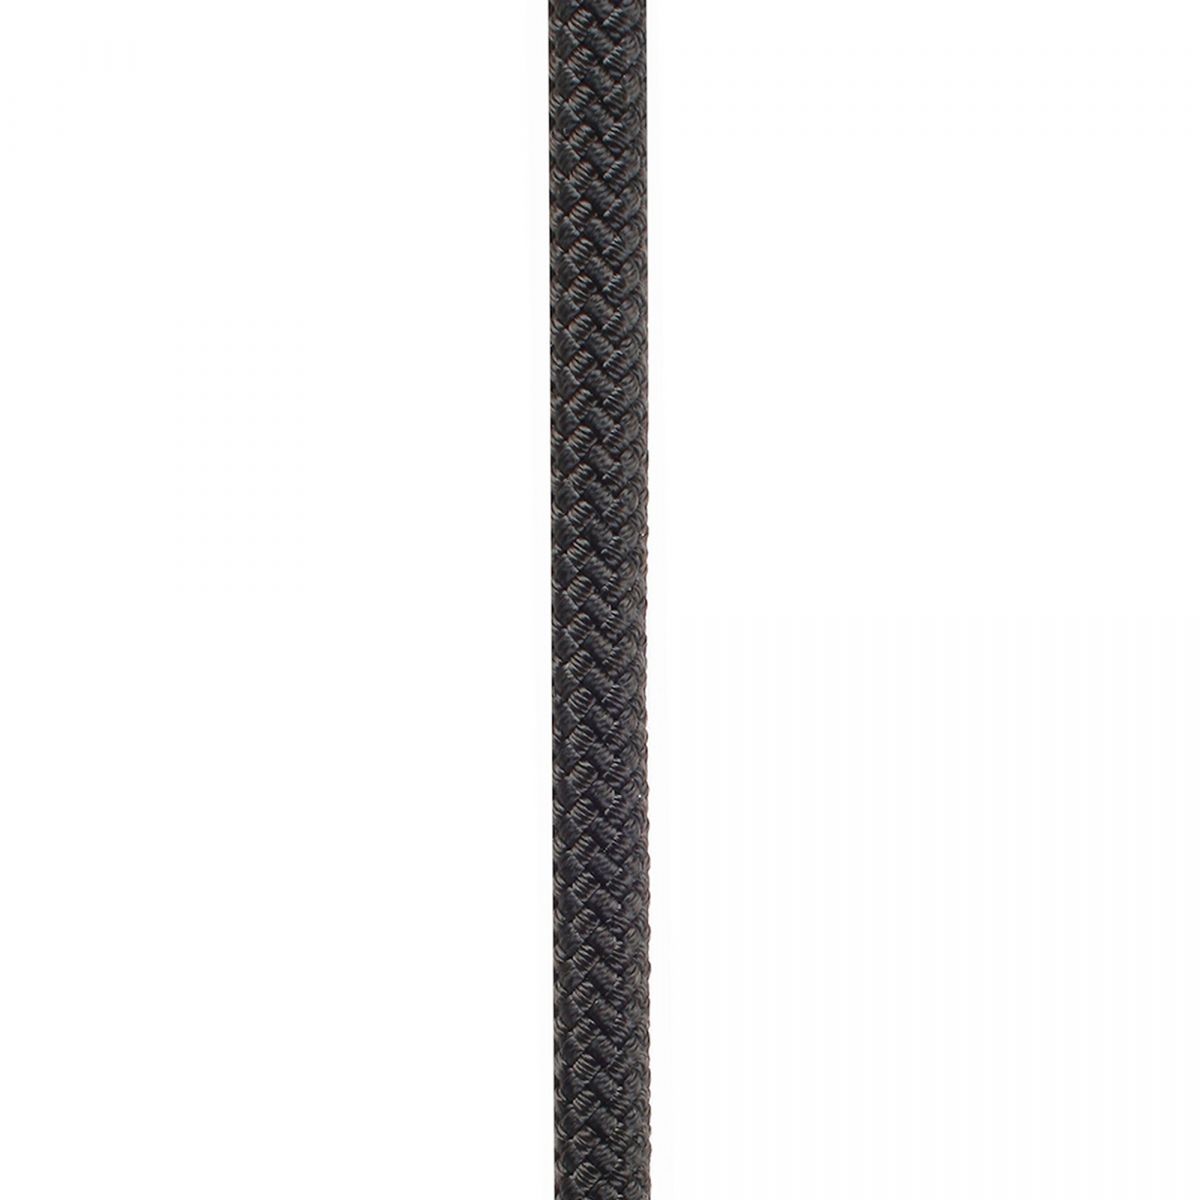 Edelweiss Proline 10,5mm 200m Negra